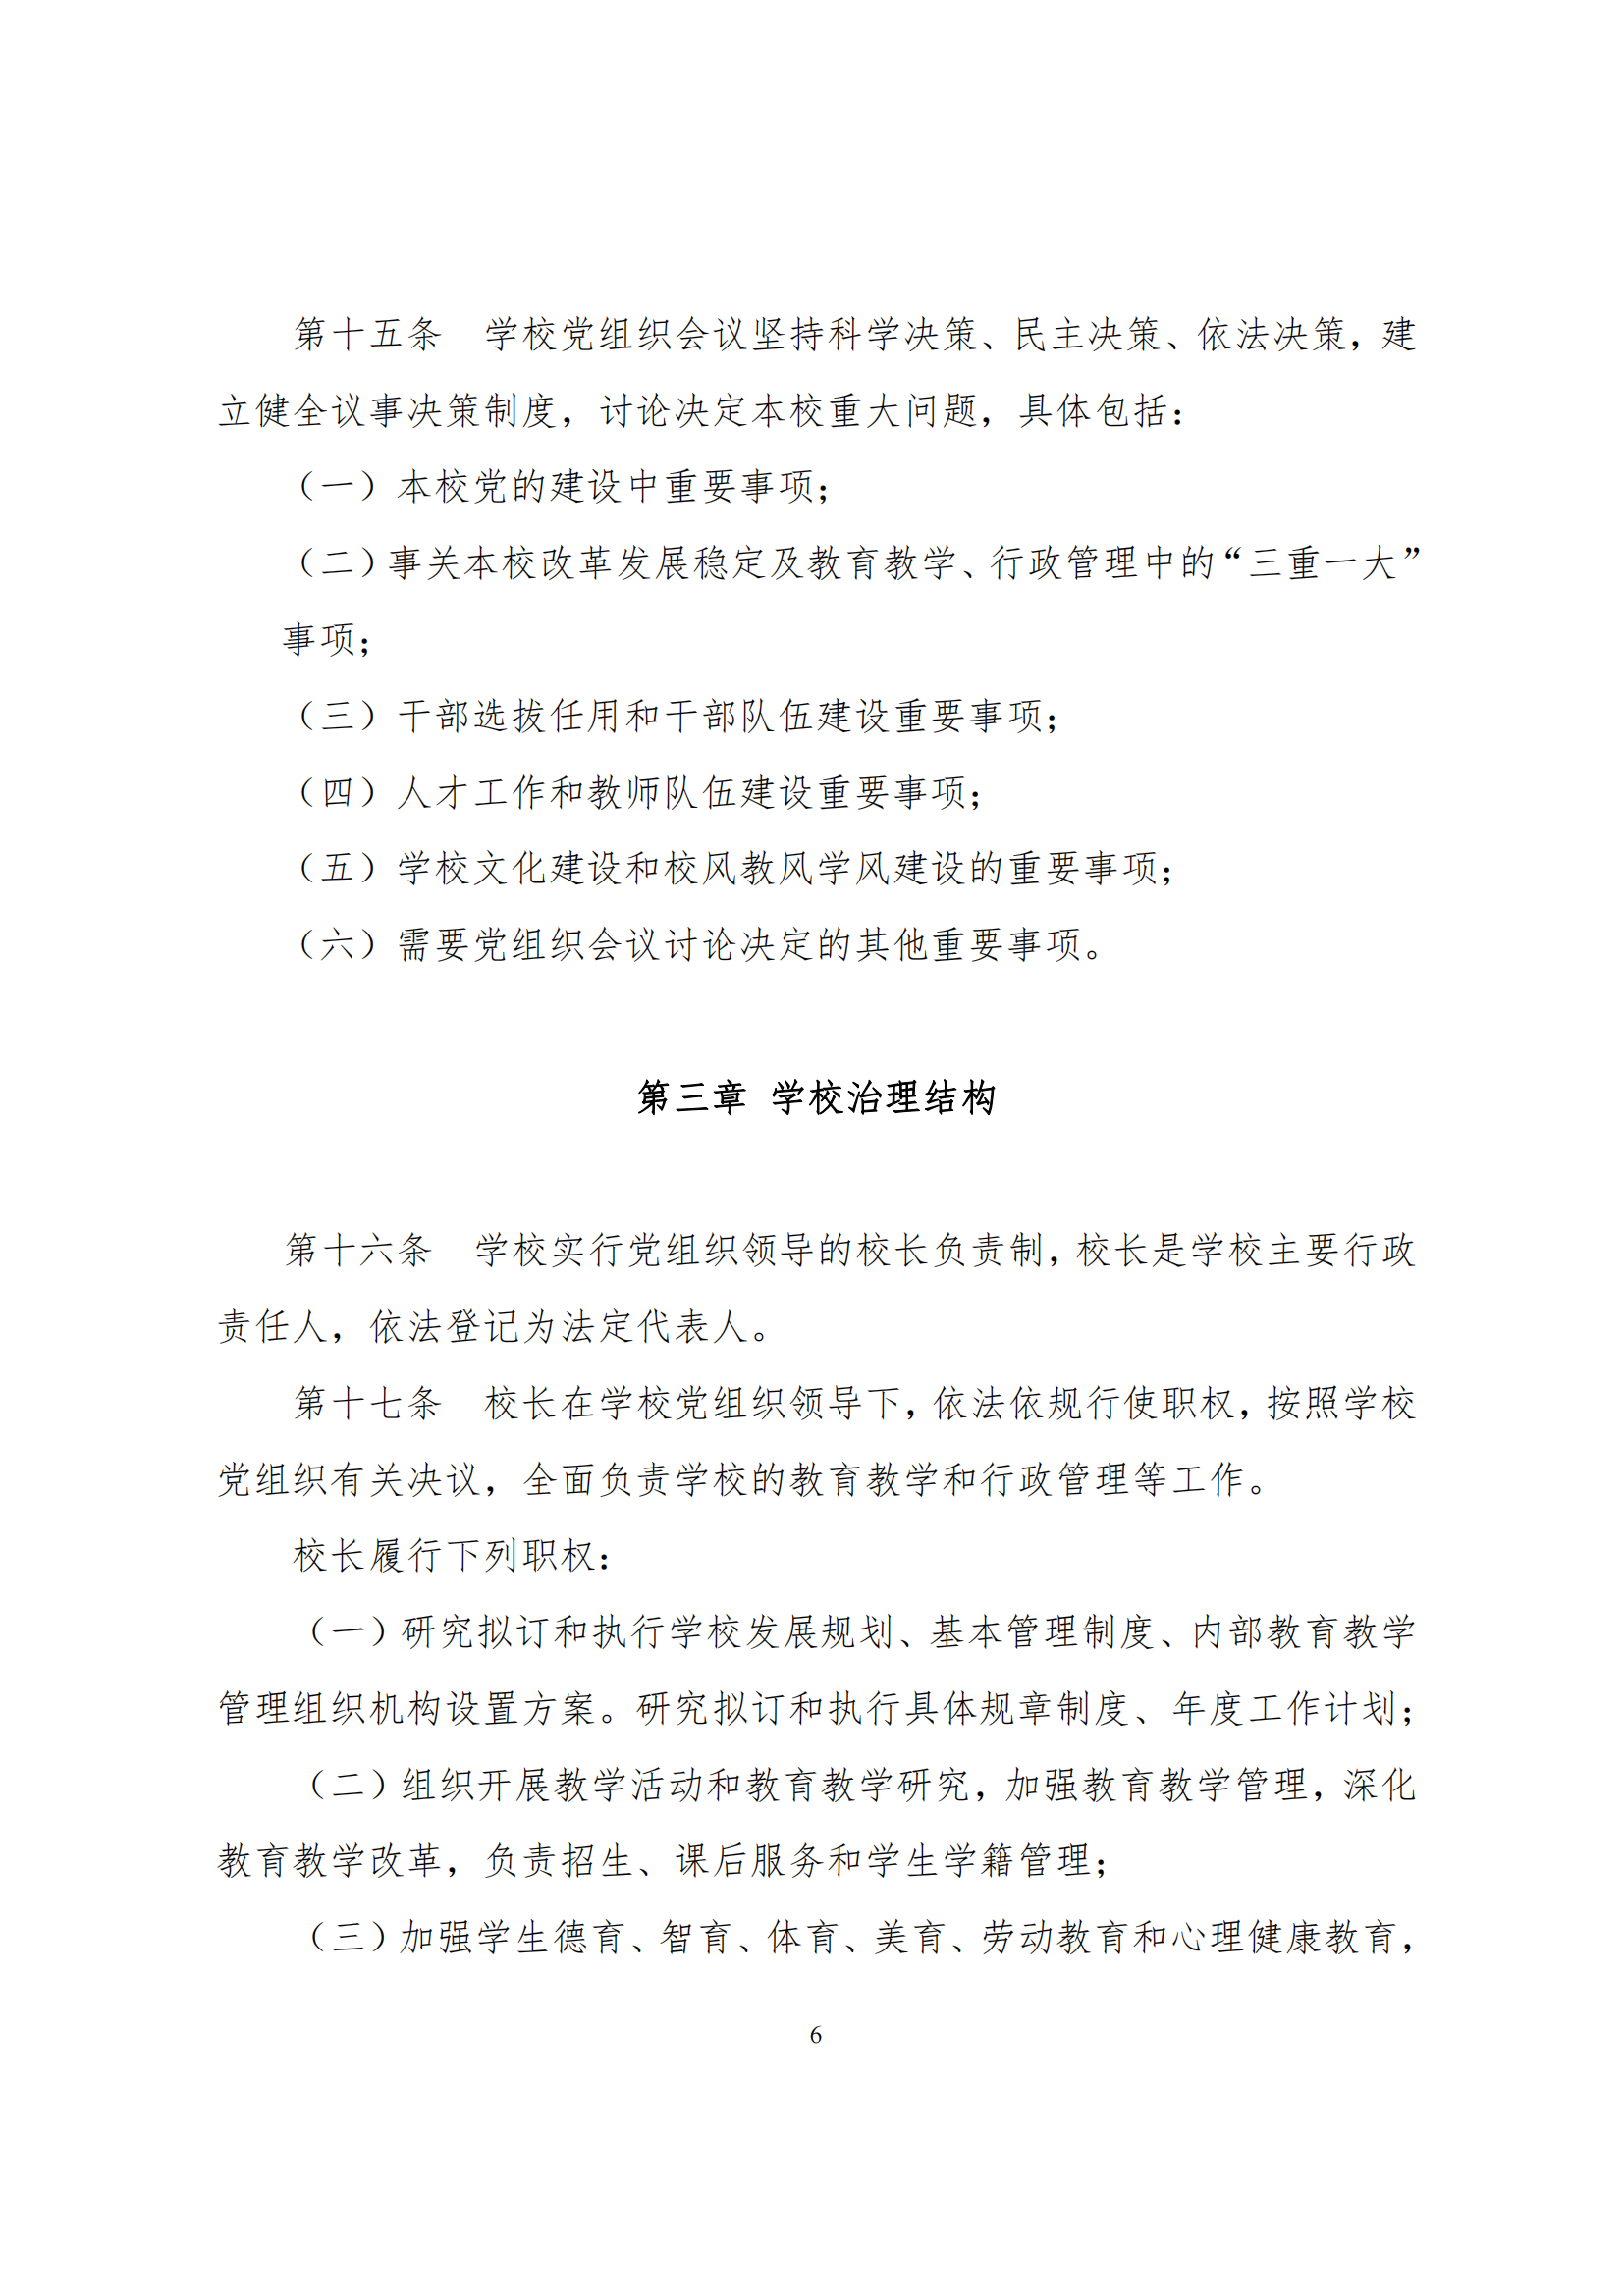 上海市徐汇区求知小学学校章程（提交稿）_05.png